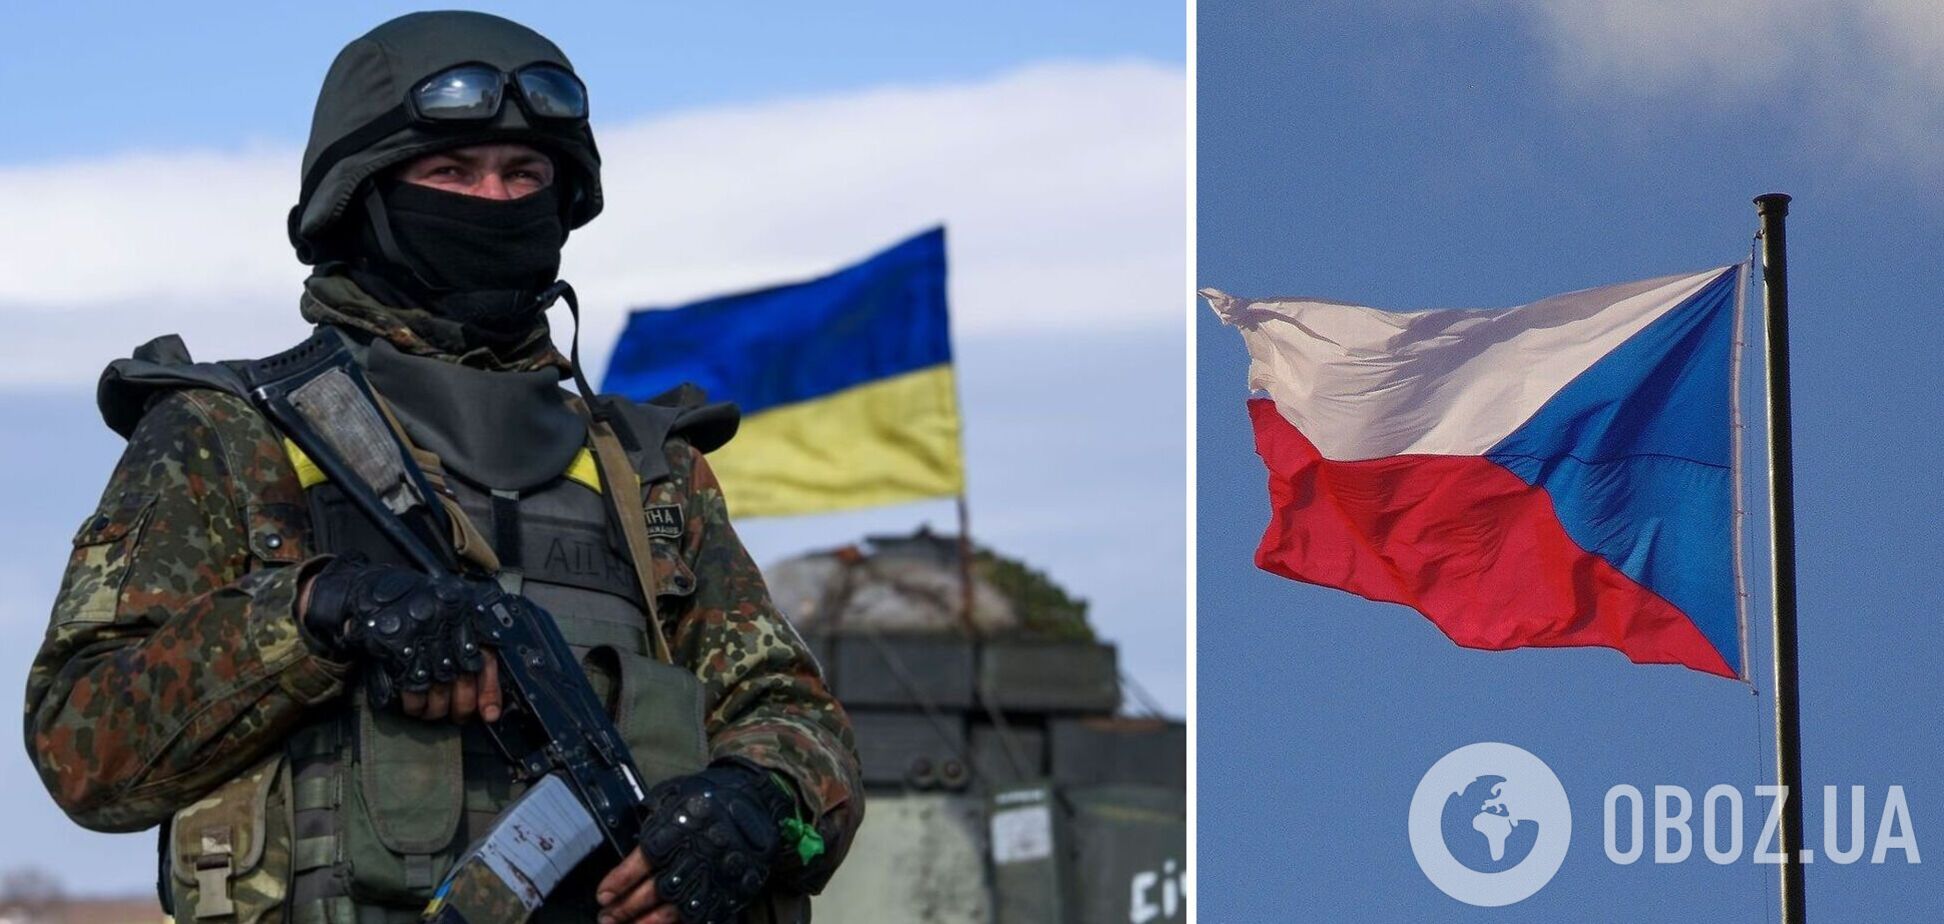 Чехия готовит новый пакет военной помощи Украине: глава Минобороны раскрыла первые детали